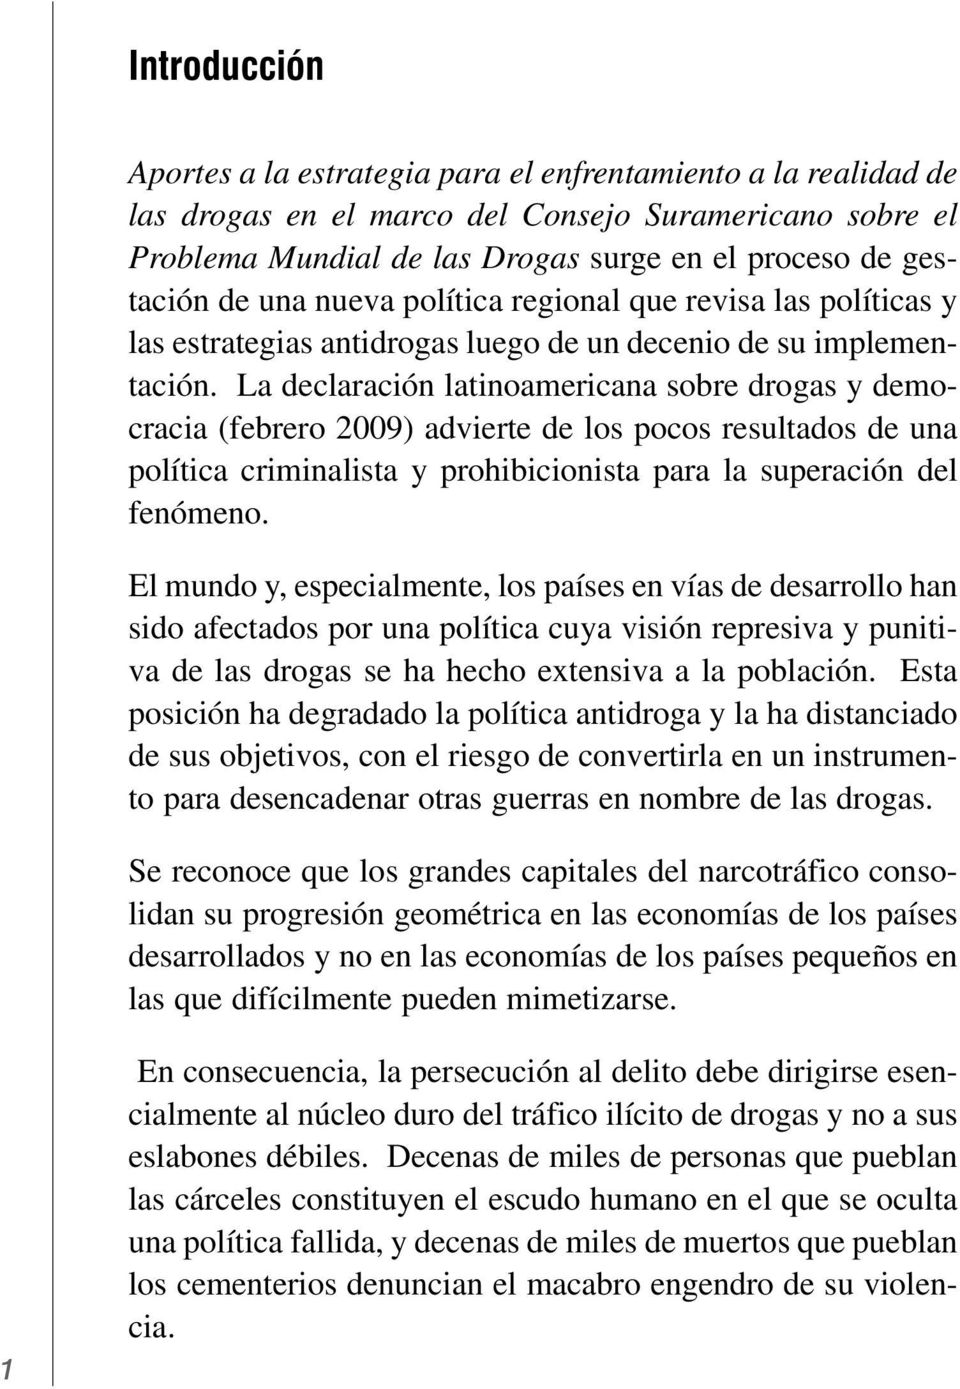 La declaración latinoamericana sobre drogas y democracia (febrero 2009) advierte de los pocos resultados de una política criminalista y prohibicionista para la superación del fenómeno.